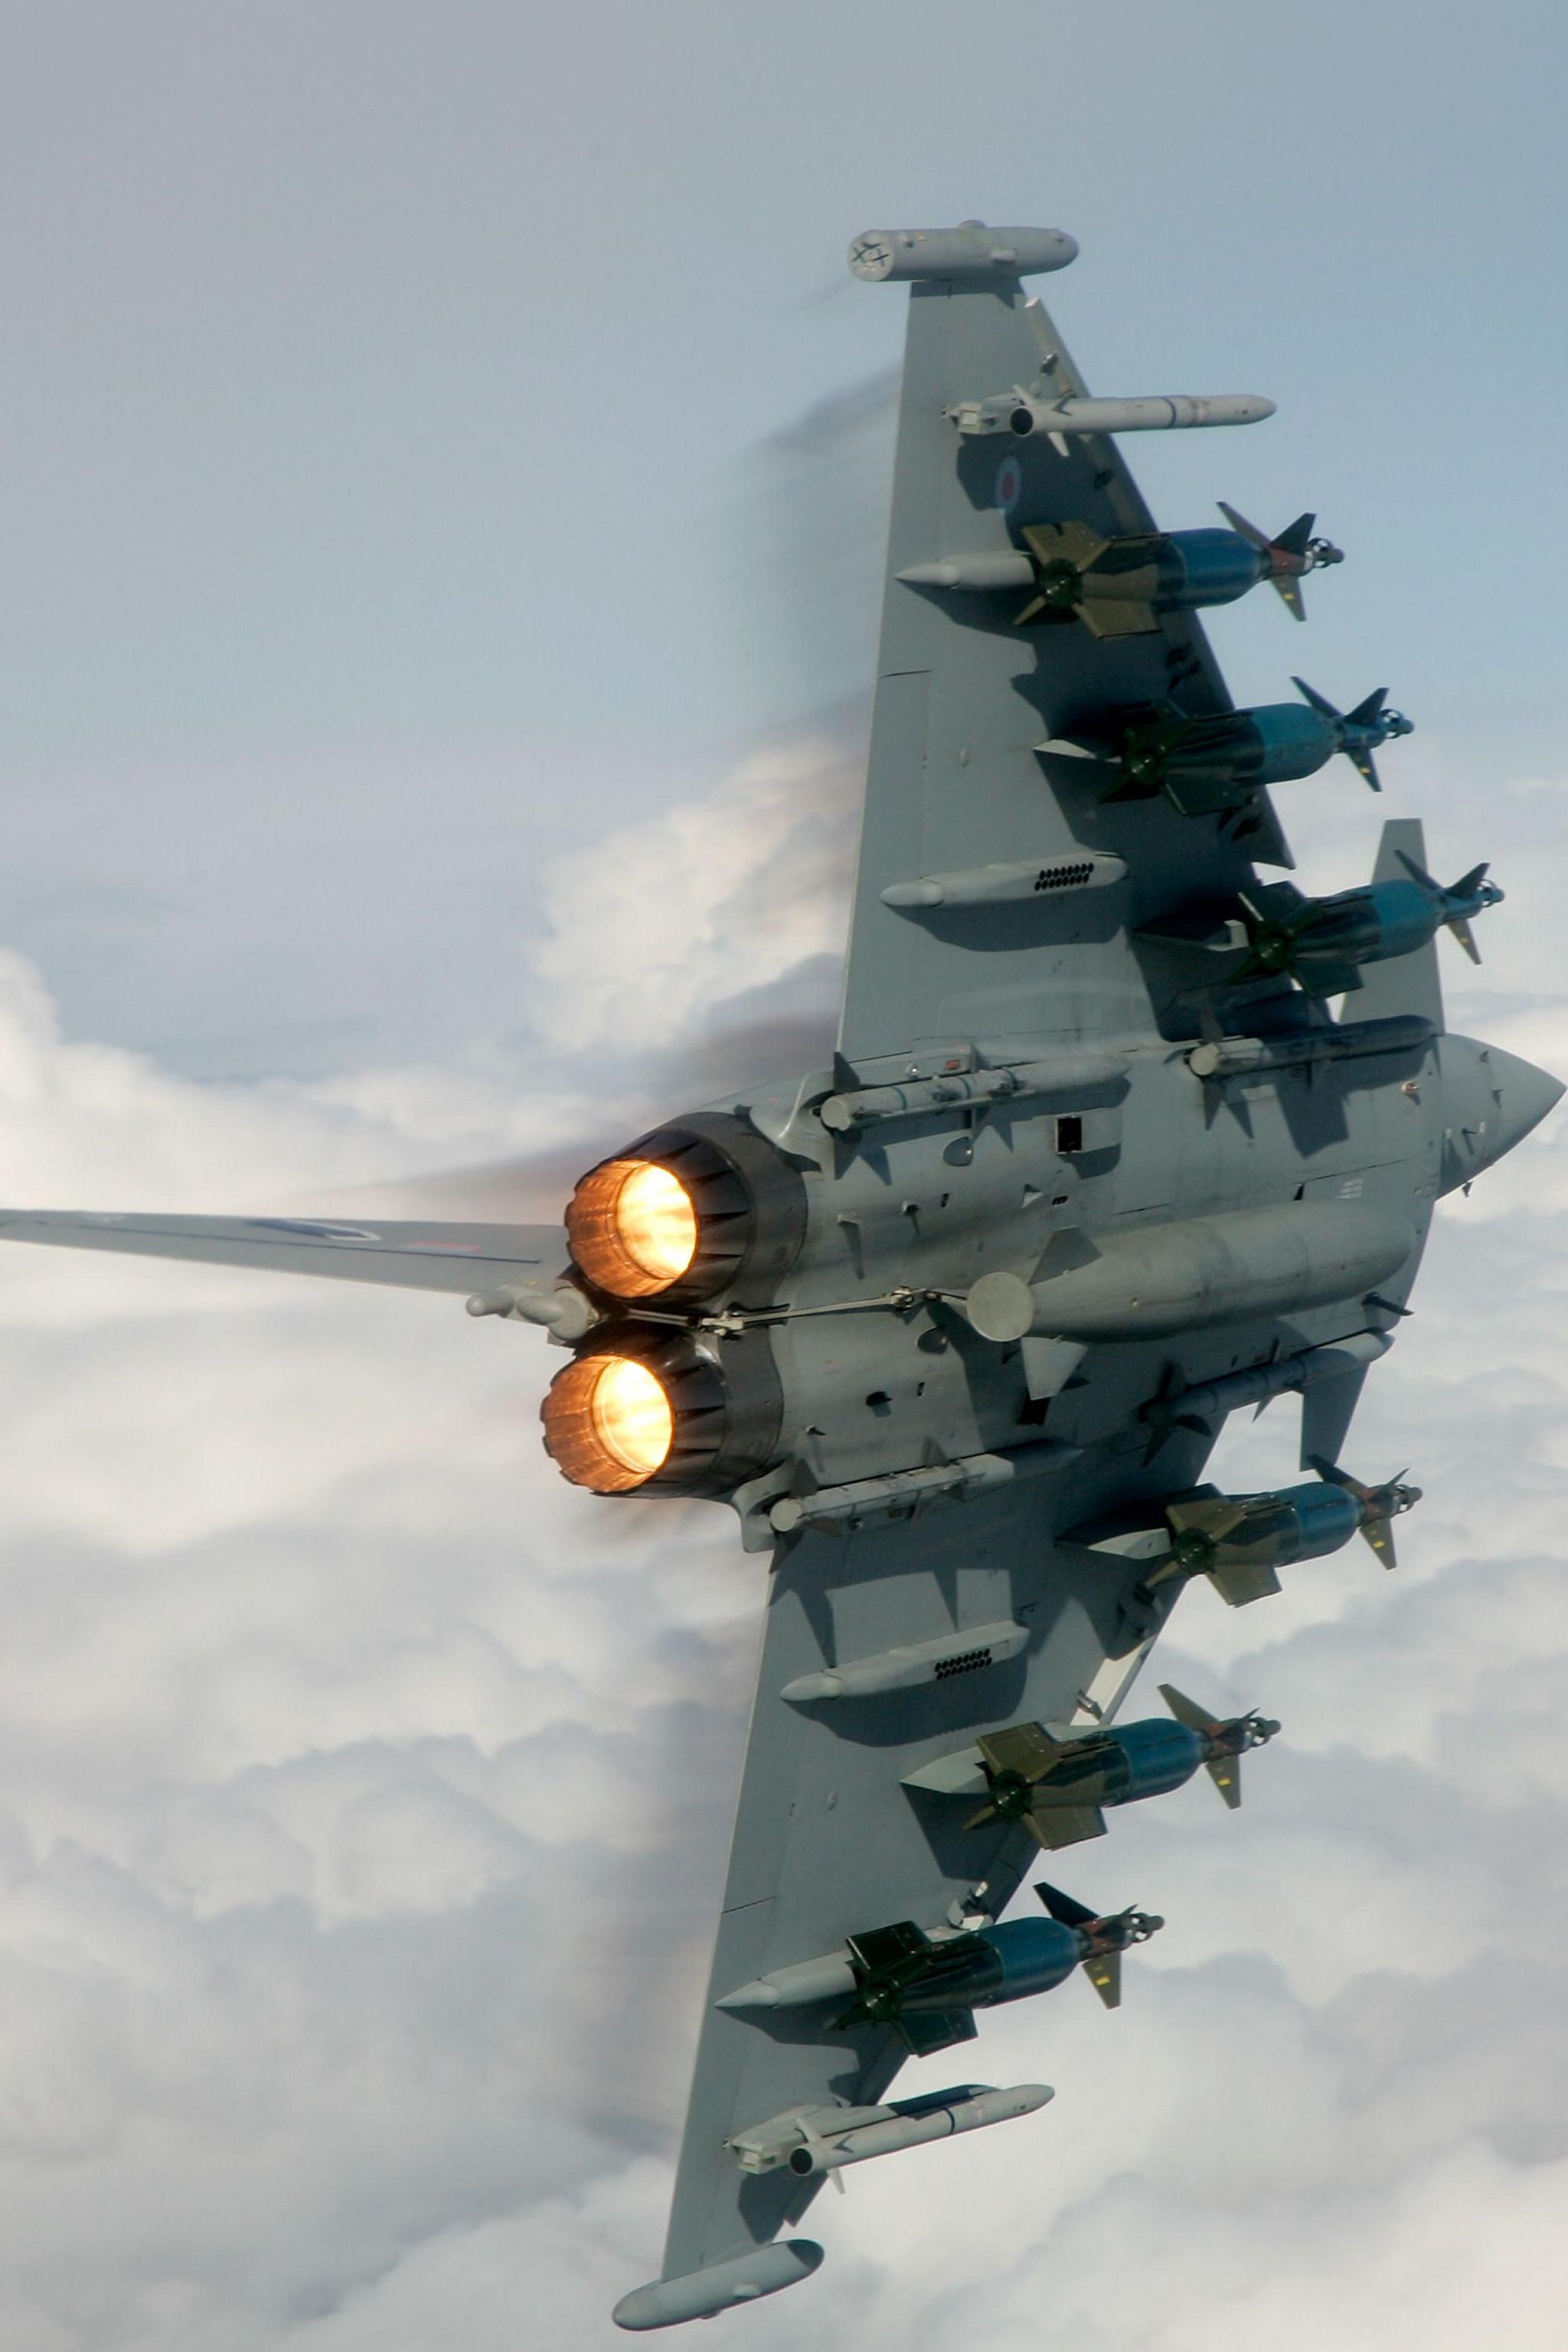 A RAF Typhoon in flight